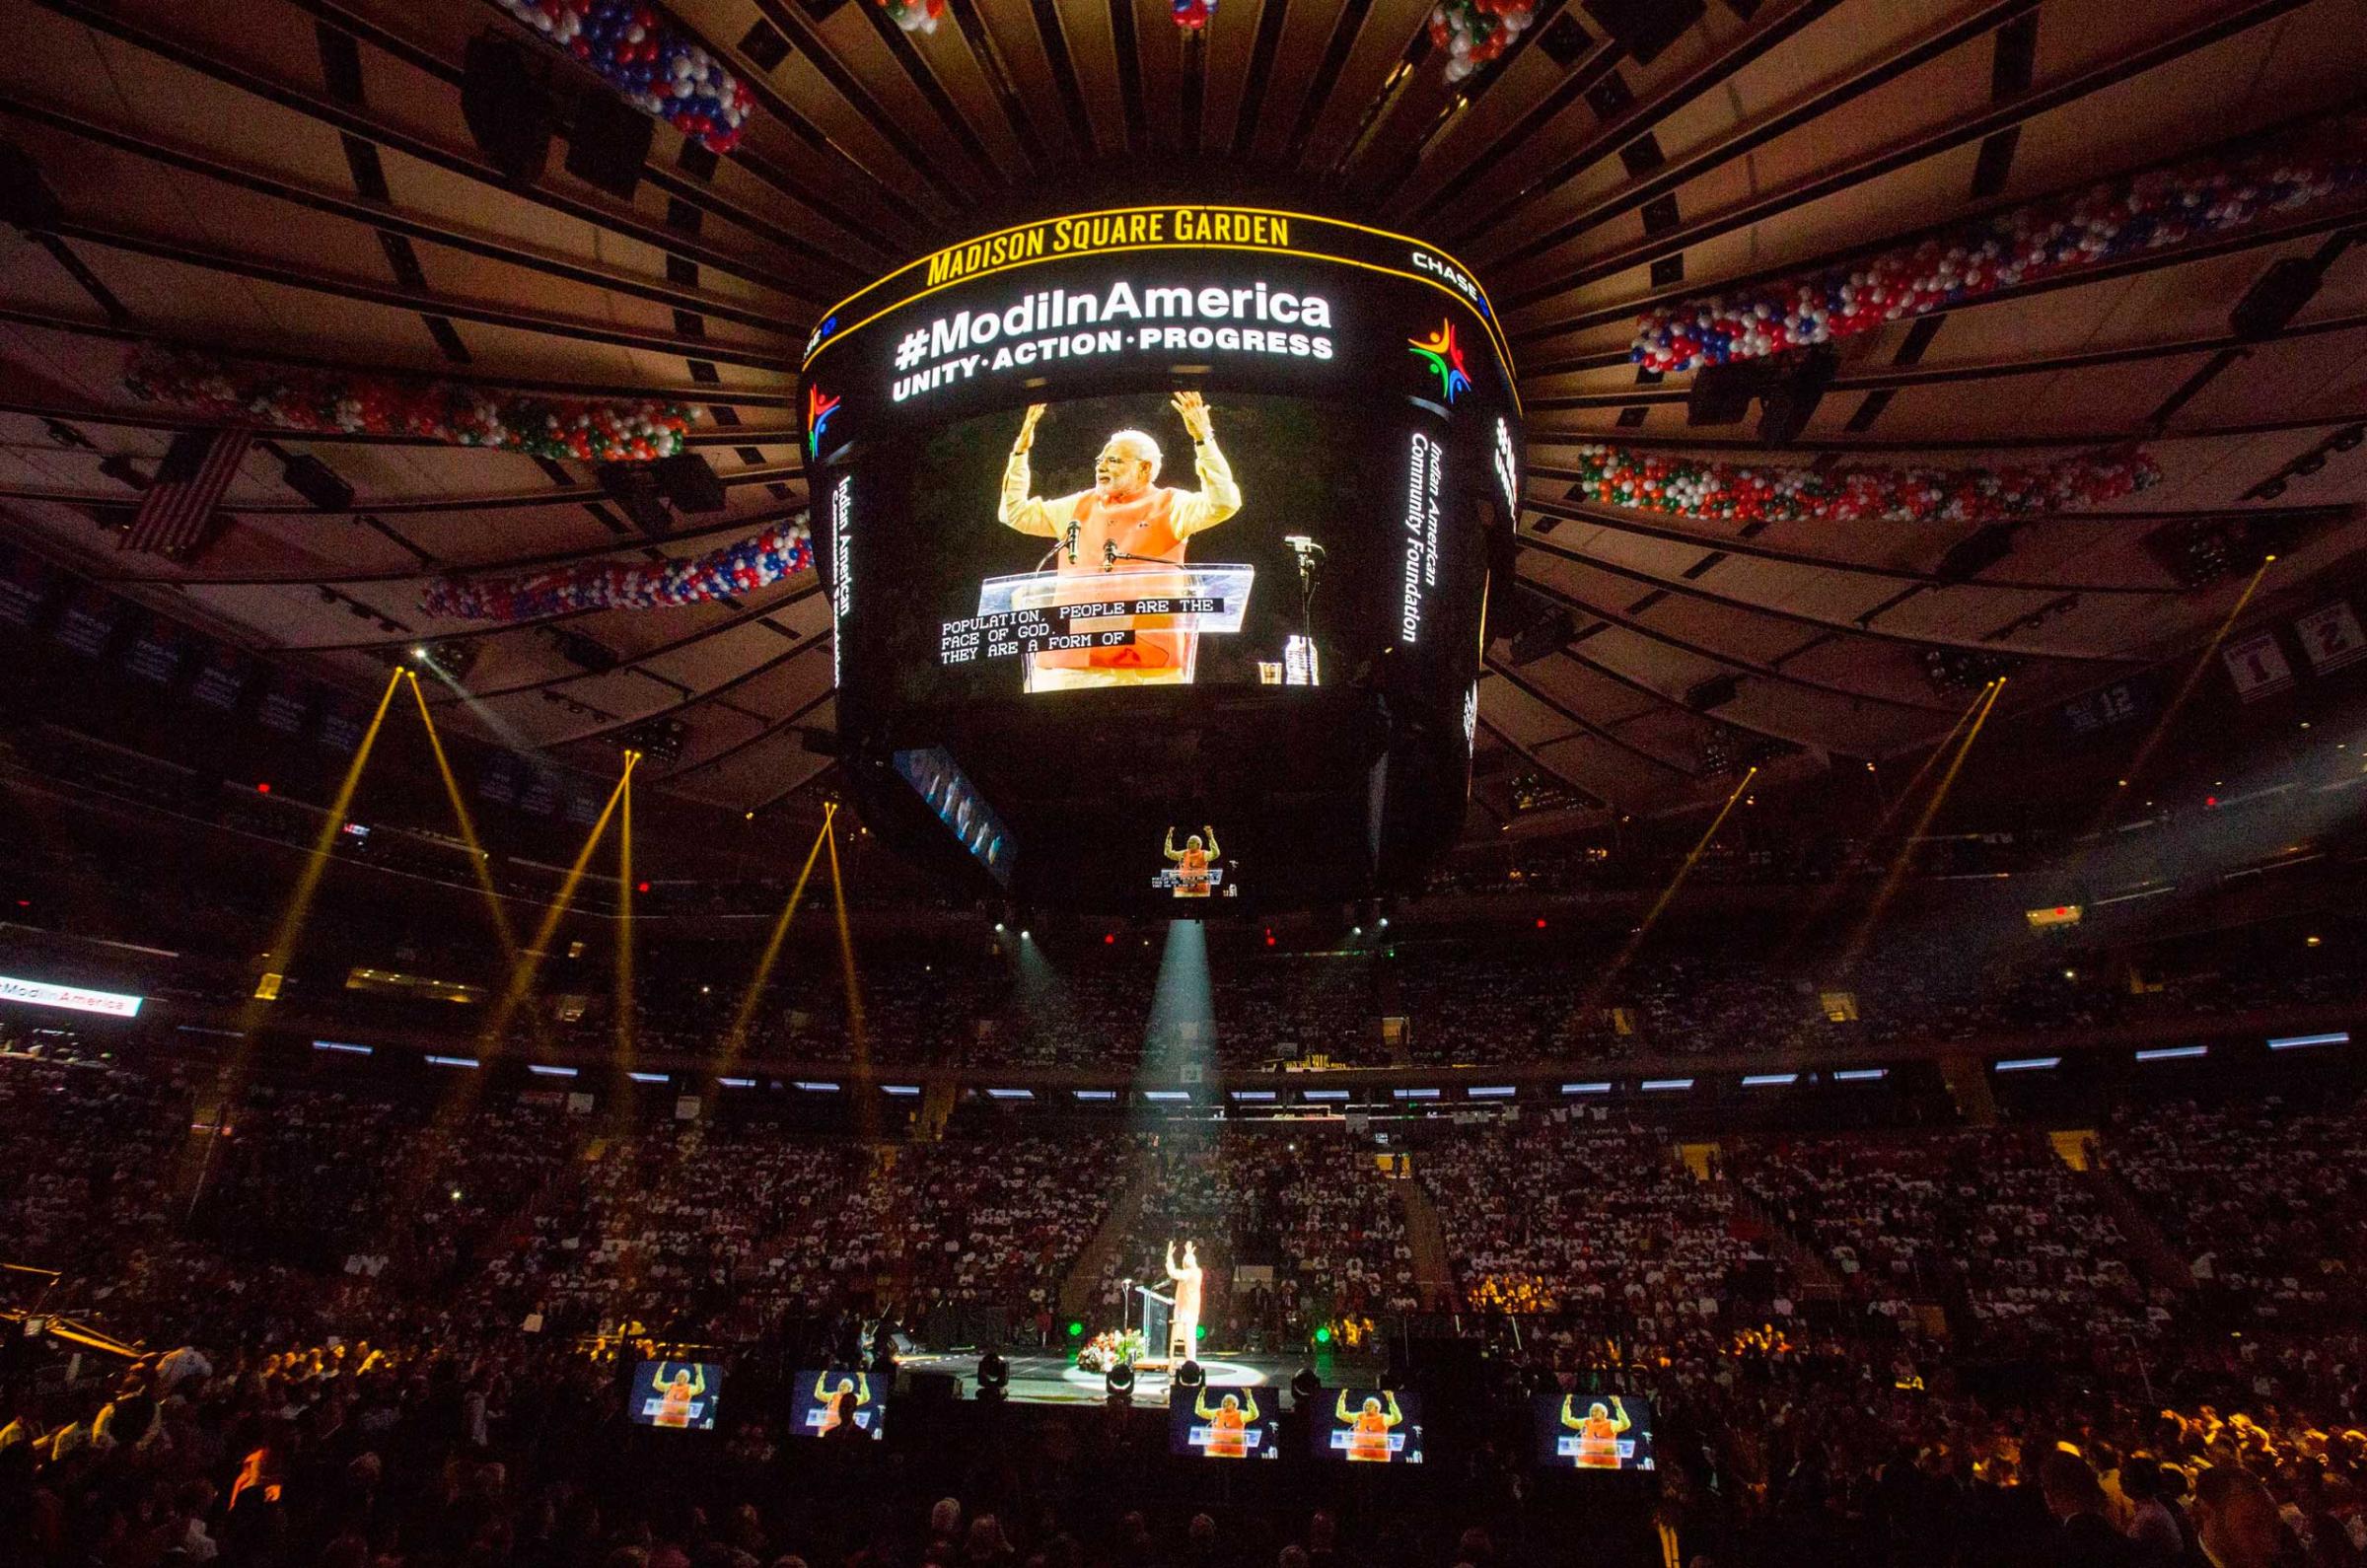 India's Prime Minister Modi speaks at Madison Square Garden in New York